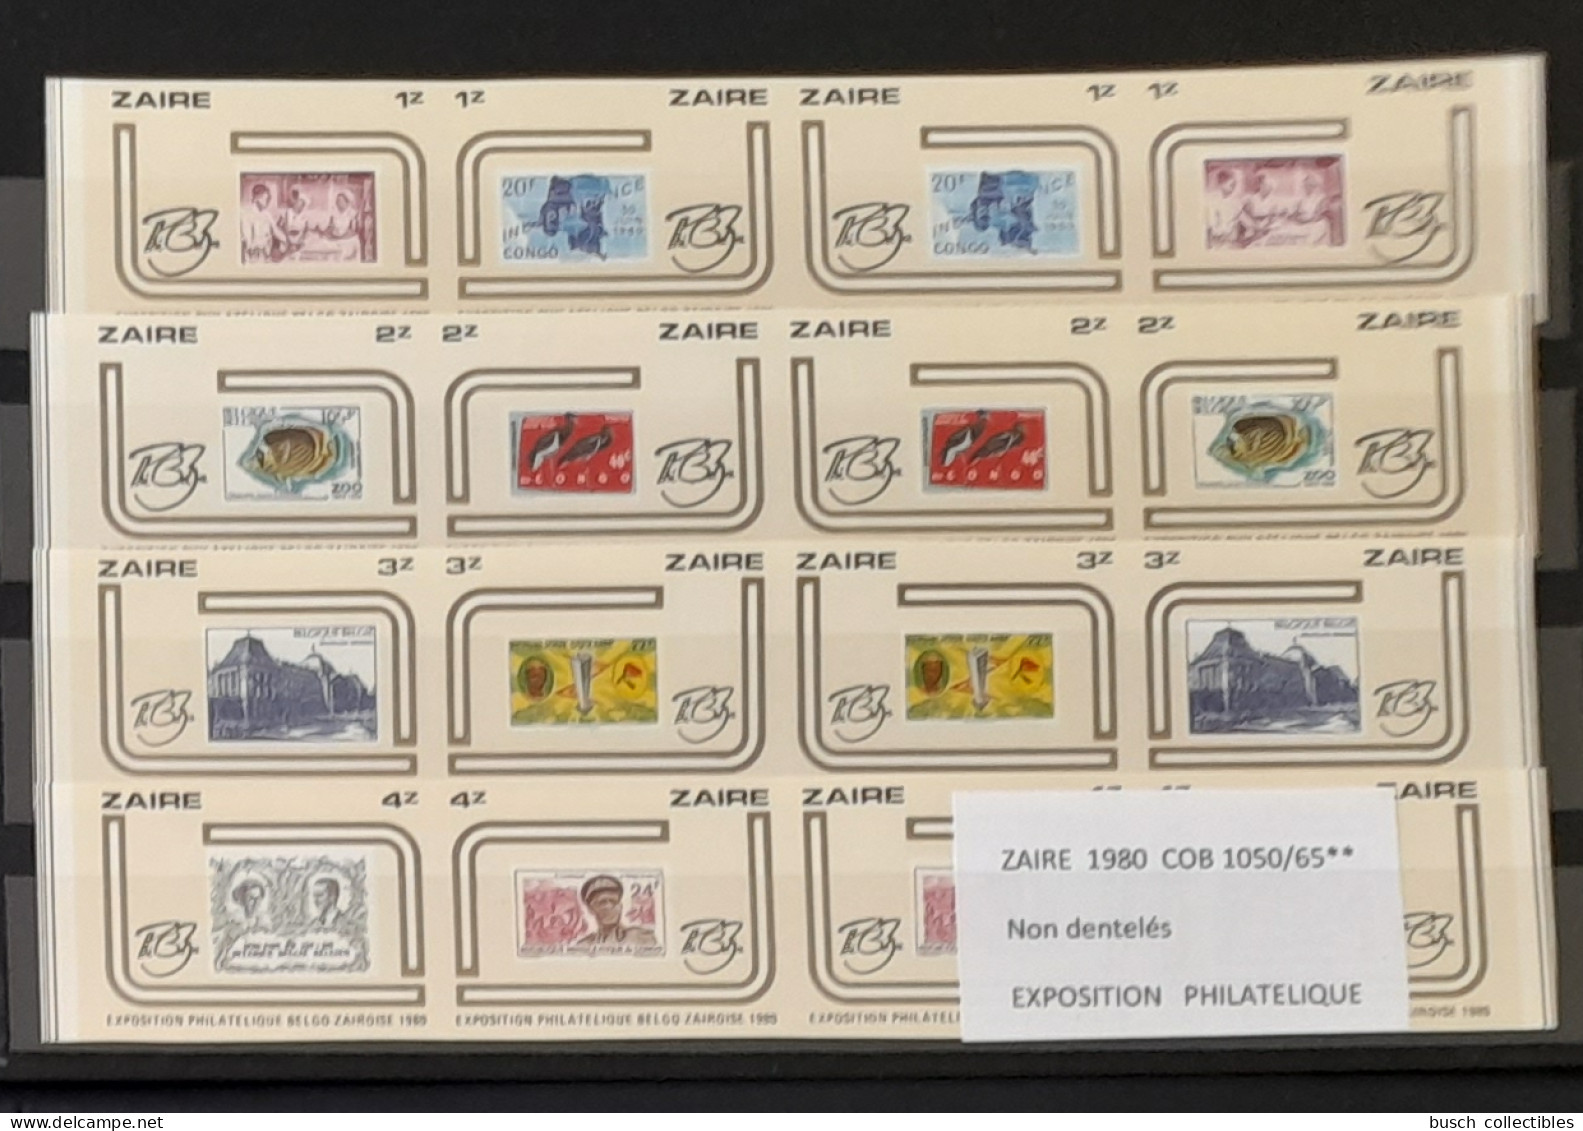 Congo Zaire 1980 COB 1050 - 1065 IMPERF Non Dentelé Exposition Philatélique Zairoise Stamp Exhibition Timbres Sur Stamps - Francobolli Su Francobolli